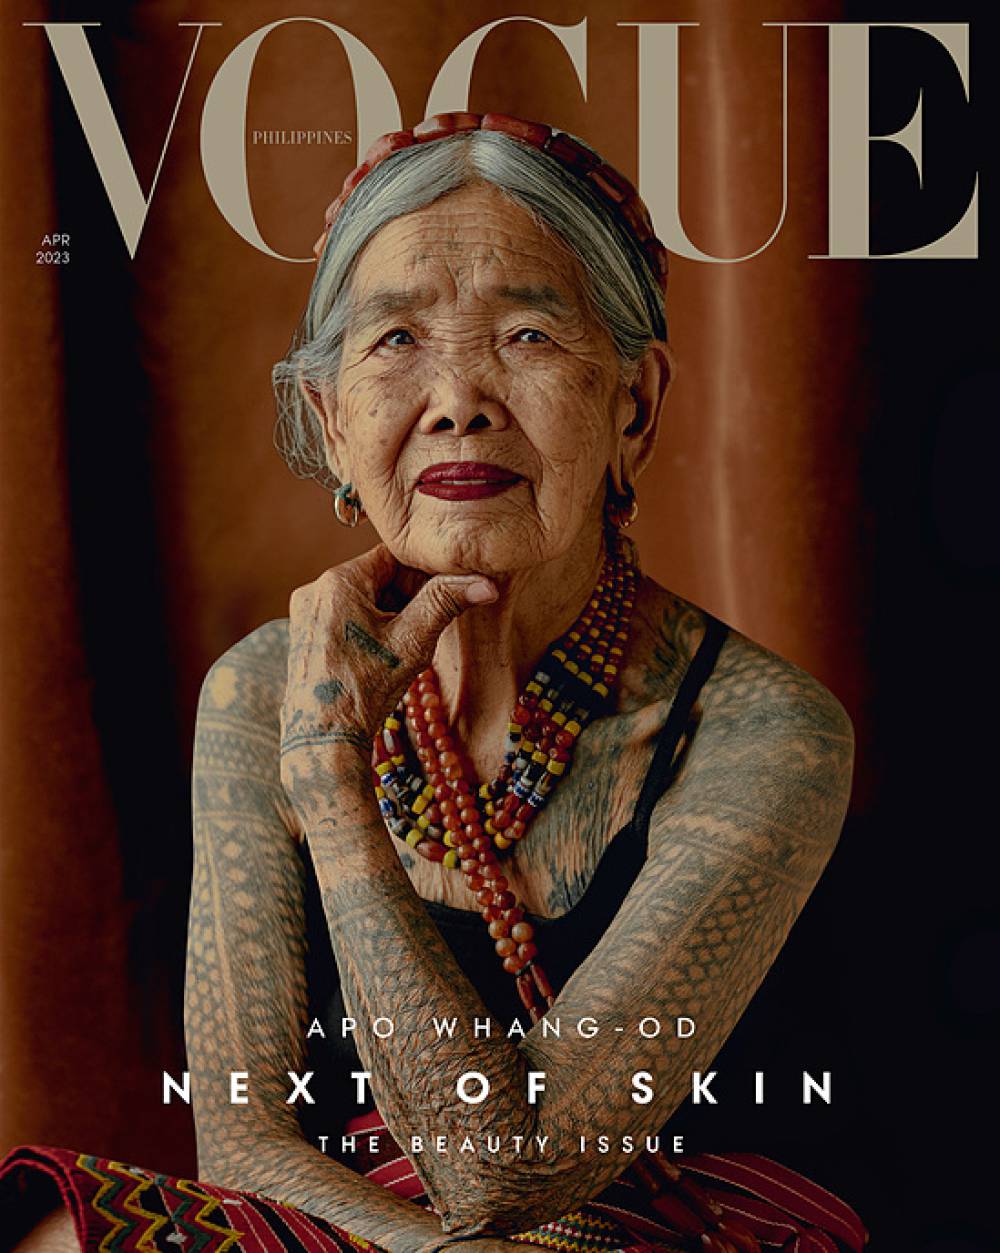 Bí quyết sống 106 tuổi của cụ bà mẫu ảnh Vogue